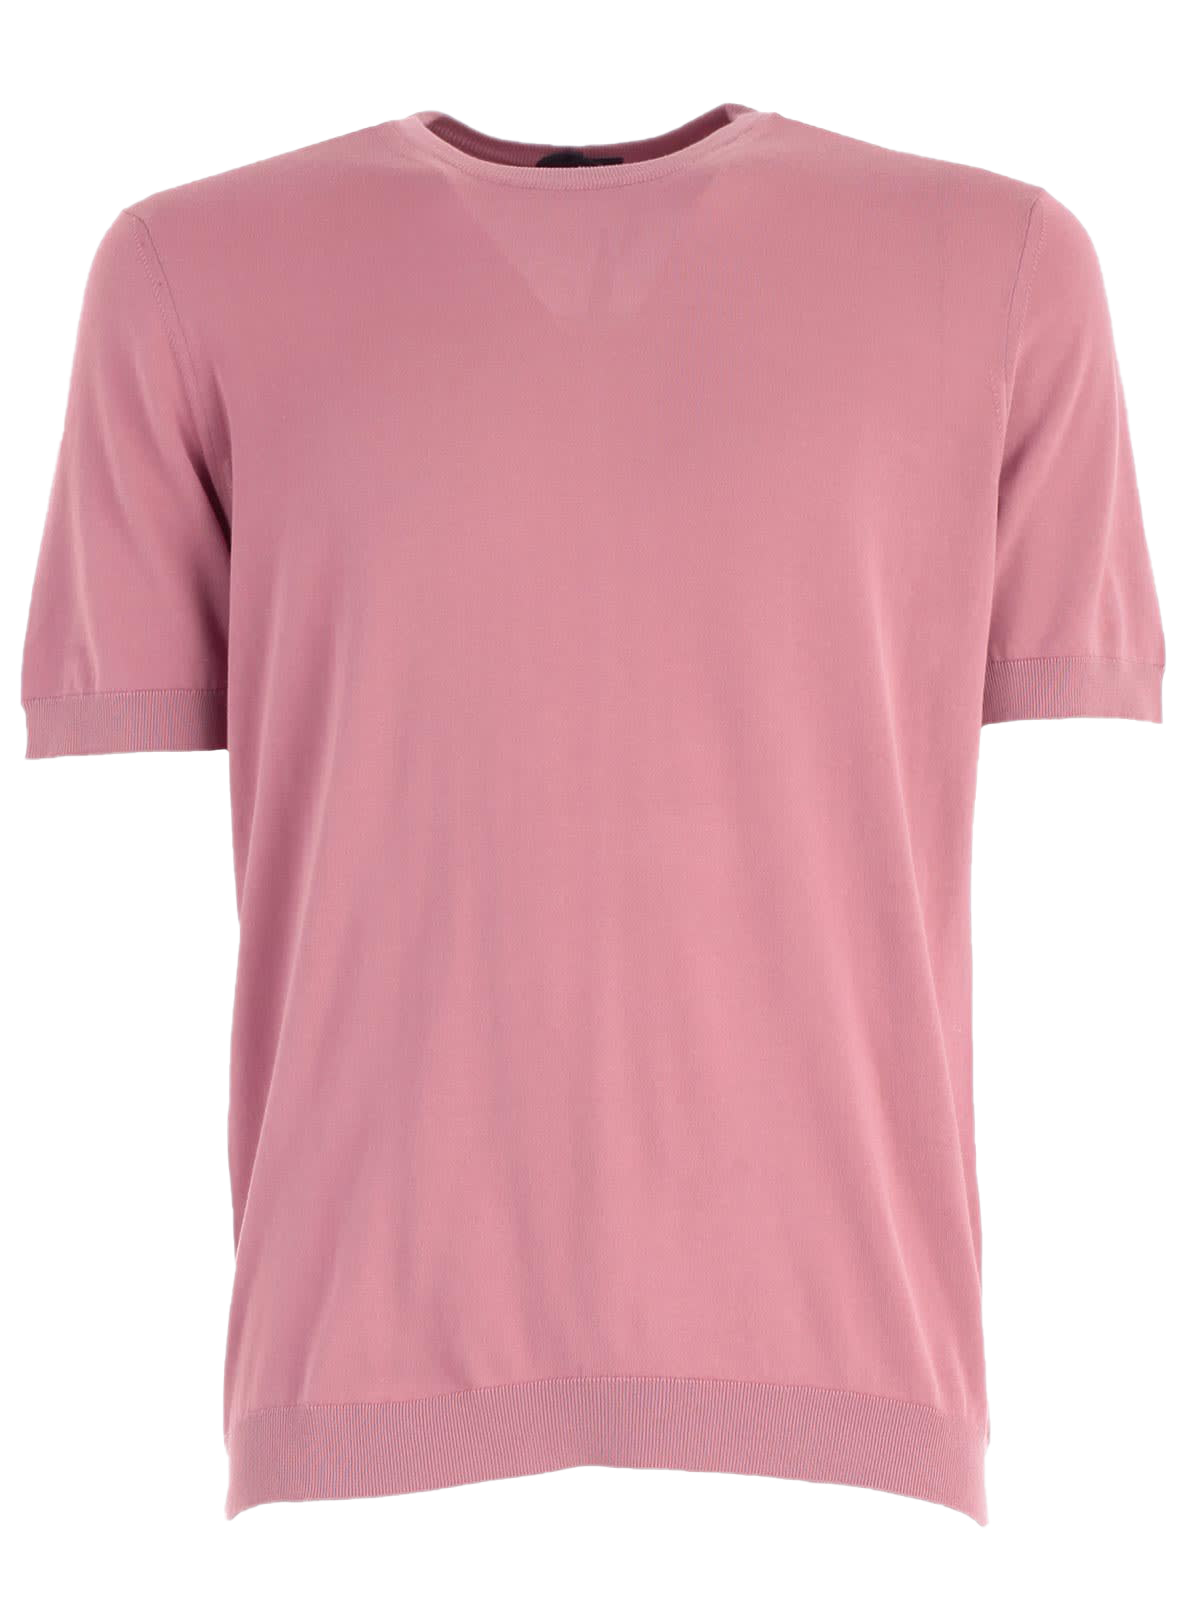 Простая розовая футболка PNG скачать бесплатно